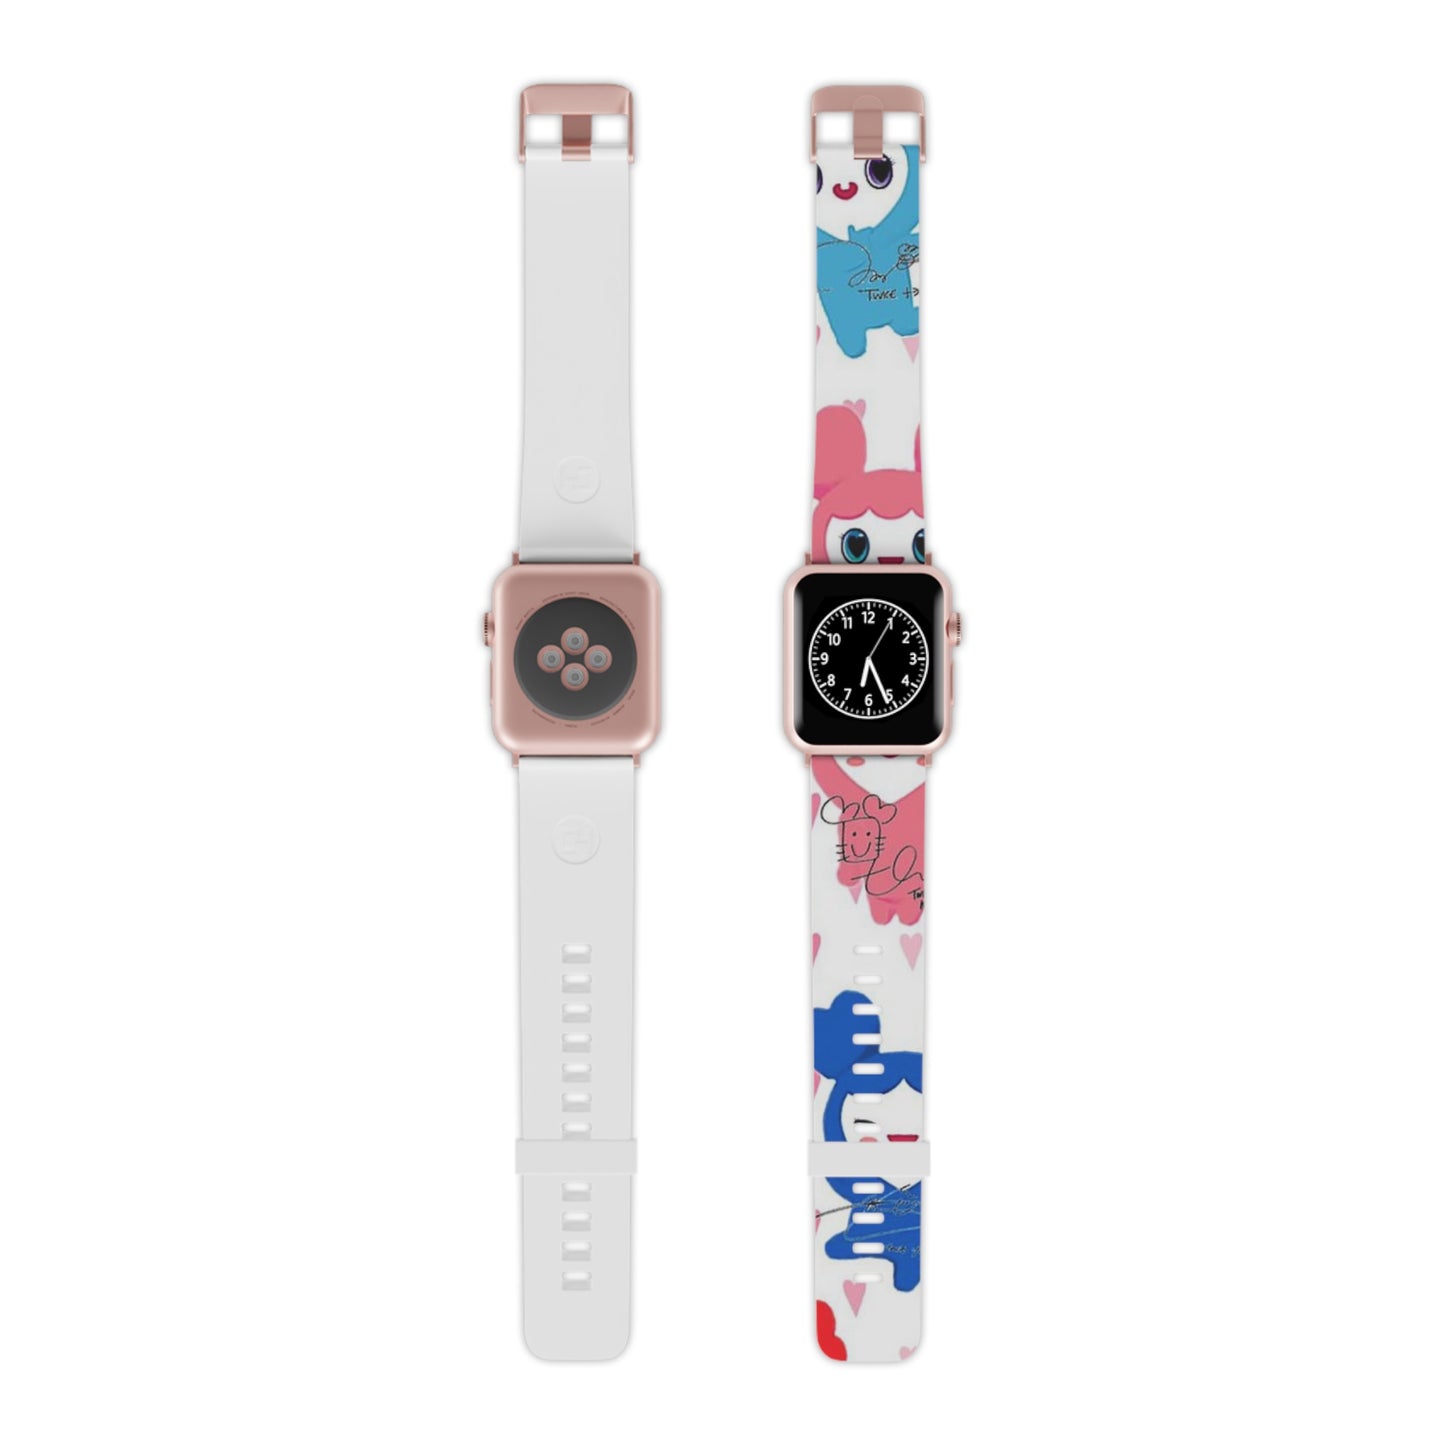 Kpop Girlband Twice Custom Watch Band for Apple Watch